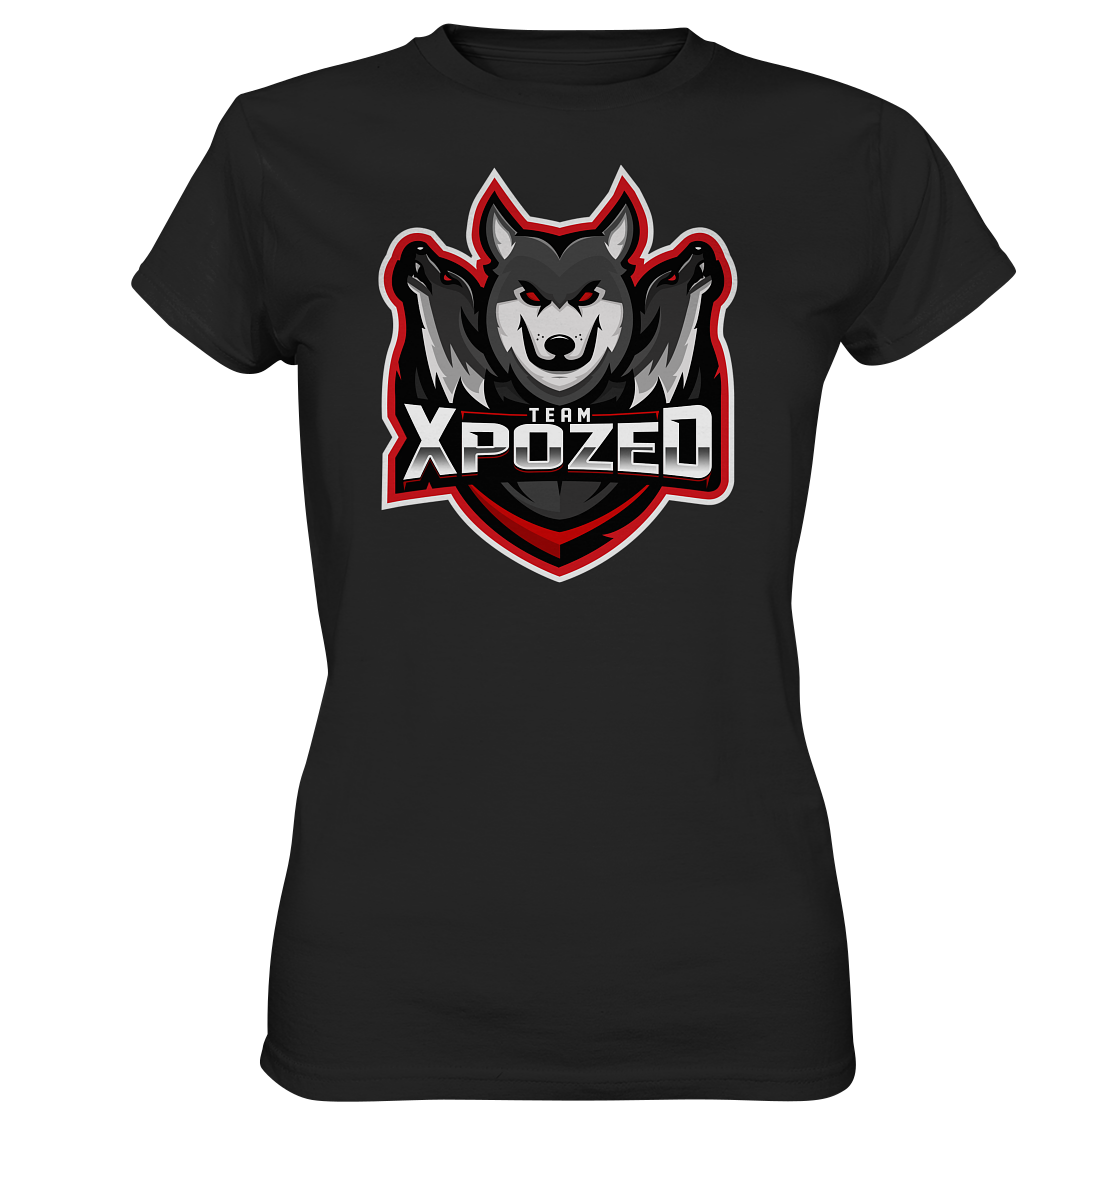 TEAM XPOZED - Ladies Basic Shirt